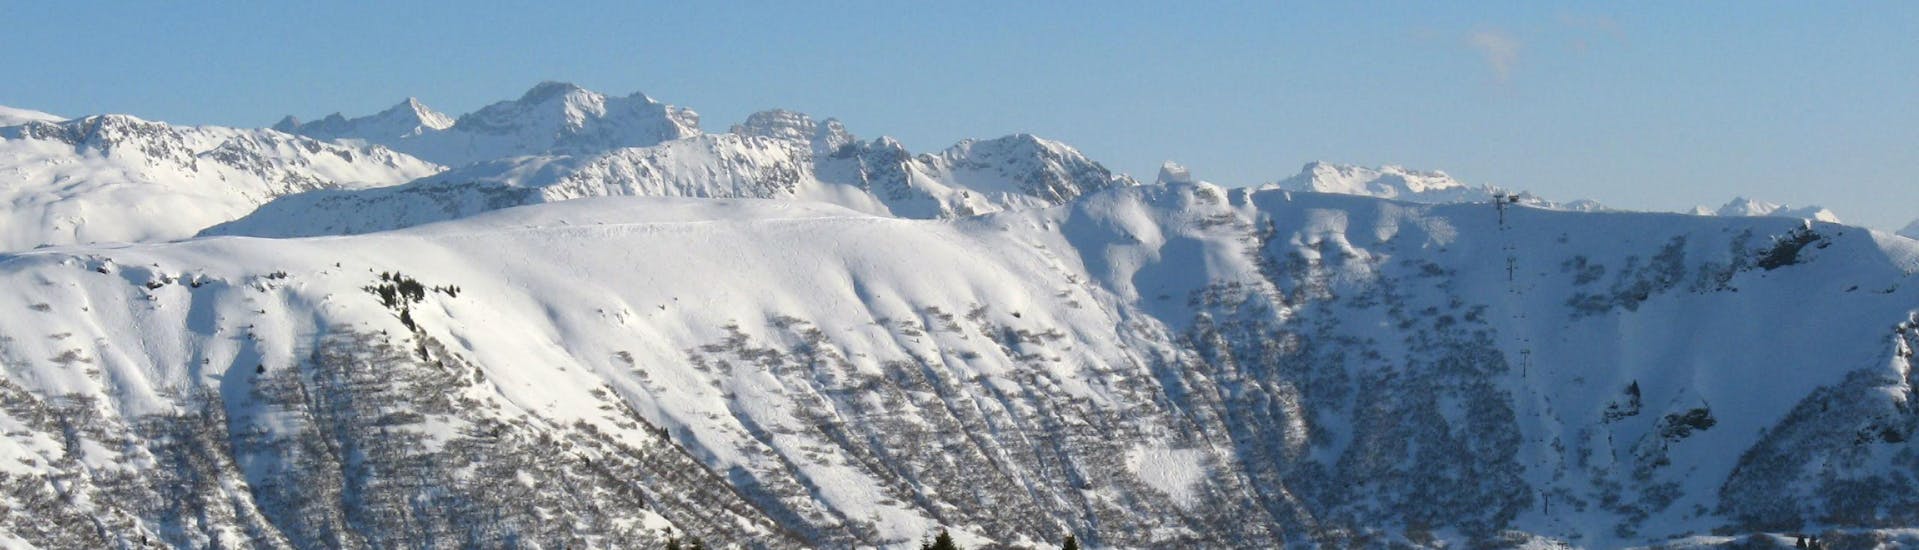 Une vue panoramique des pistes de ski de Crest-Voland Cohennoz, une station de ski française nichée entre les majestueux sommets du département de la Savoie, où les écoles de ski locales offrent un large choix de cours de ski.